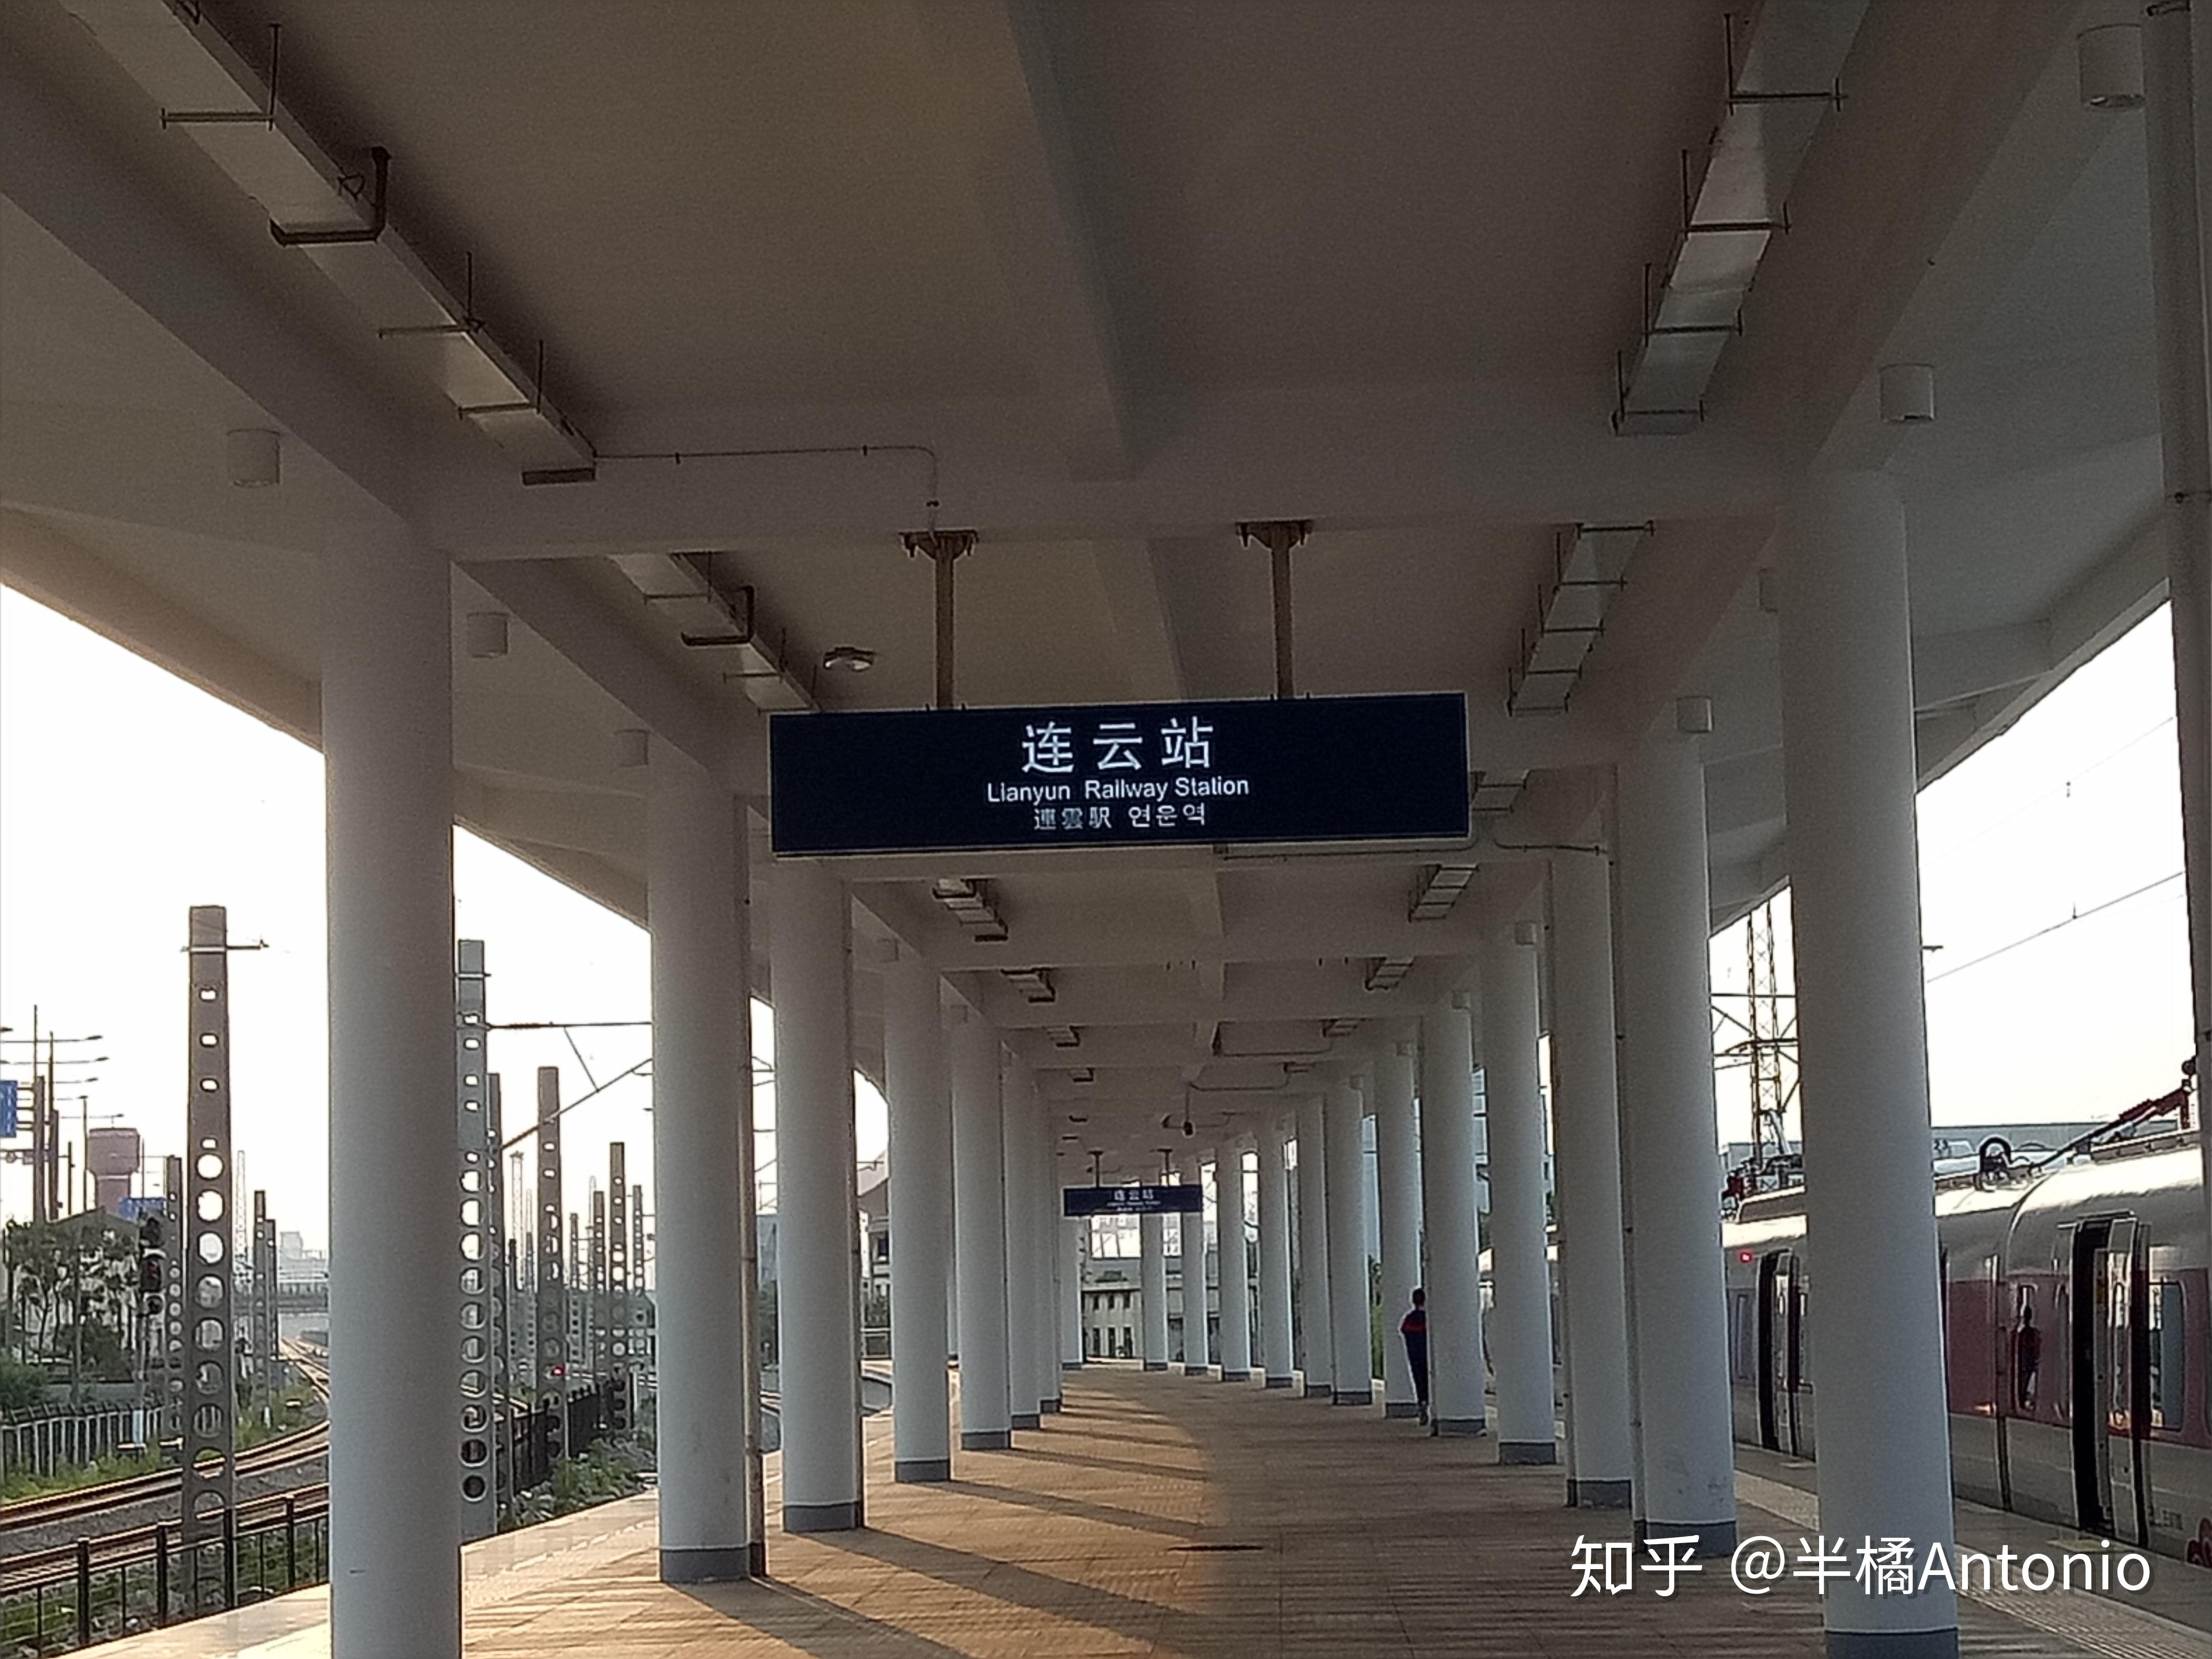 就在连云港！江苏省首条市域铁路投入营运